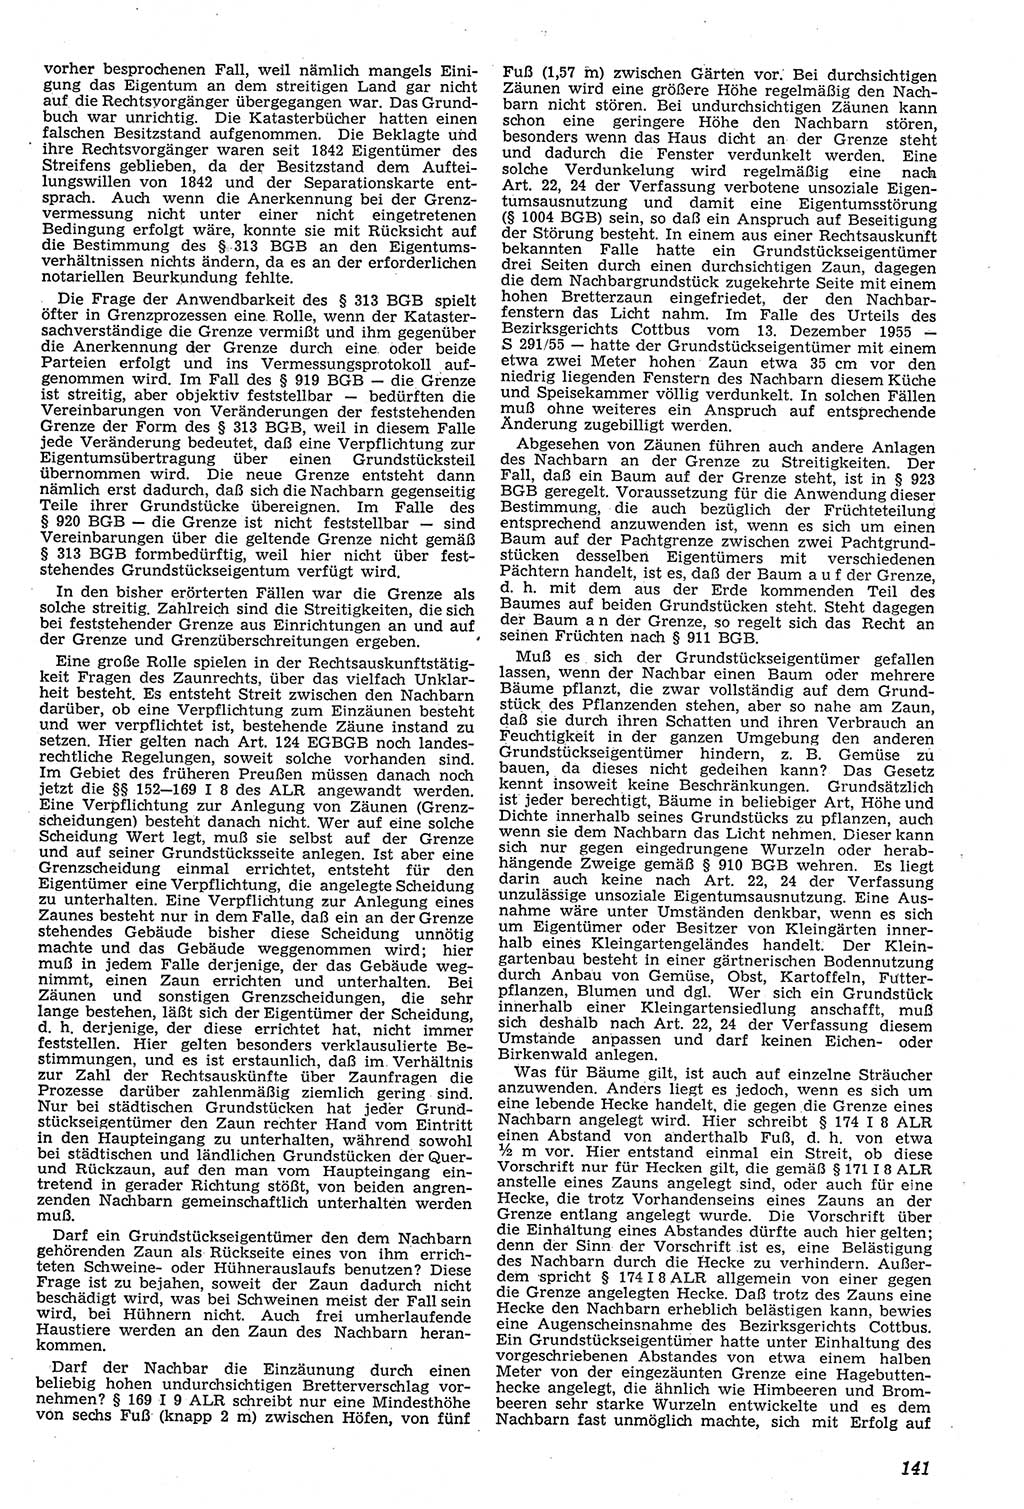 Neue Justiz (NJ), Zeitschrift für Recht und Rechtswissenschaft [Deutsche Demokratische Republik (DDR)], 11. Jahrgang 1957, Seite 141 (NJ DDR 1957, S. 141)